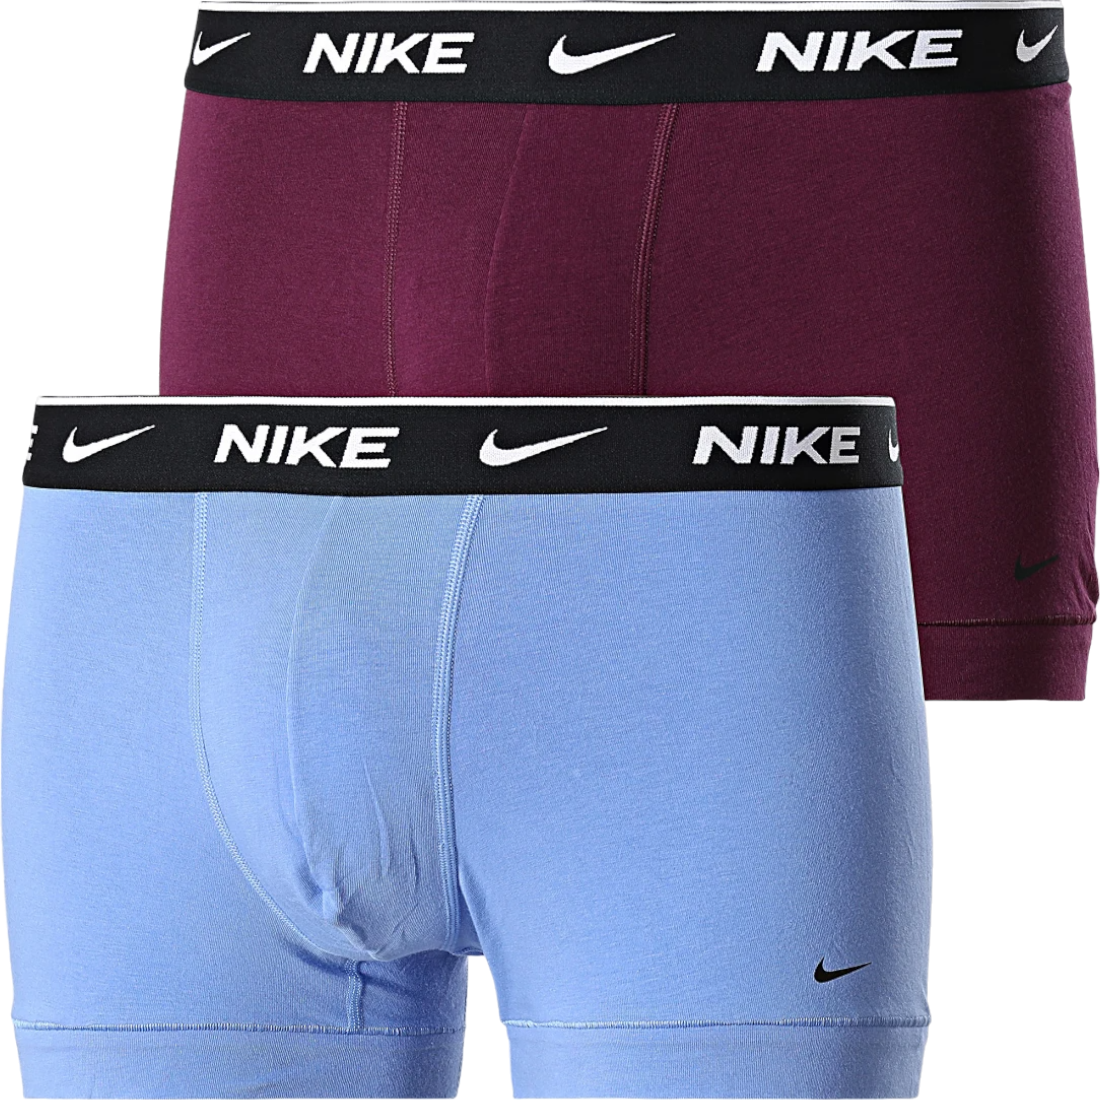 Boxershorts Nike Cotton Trunk 2 pcs